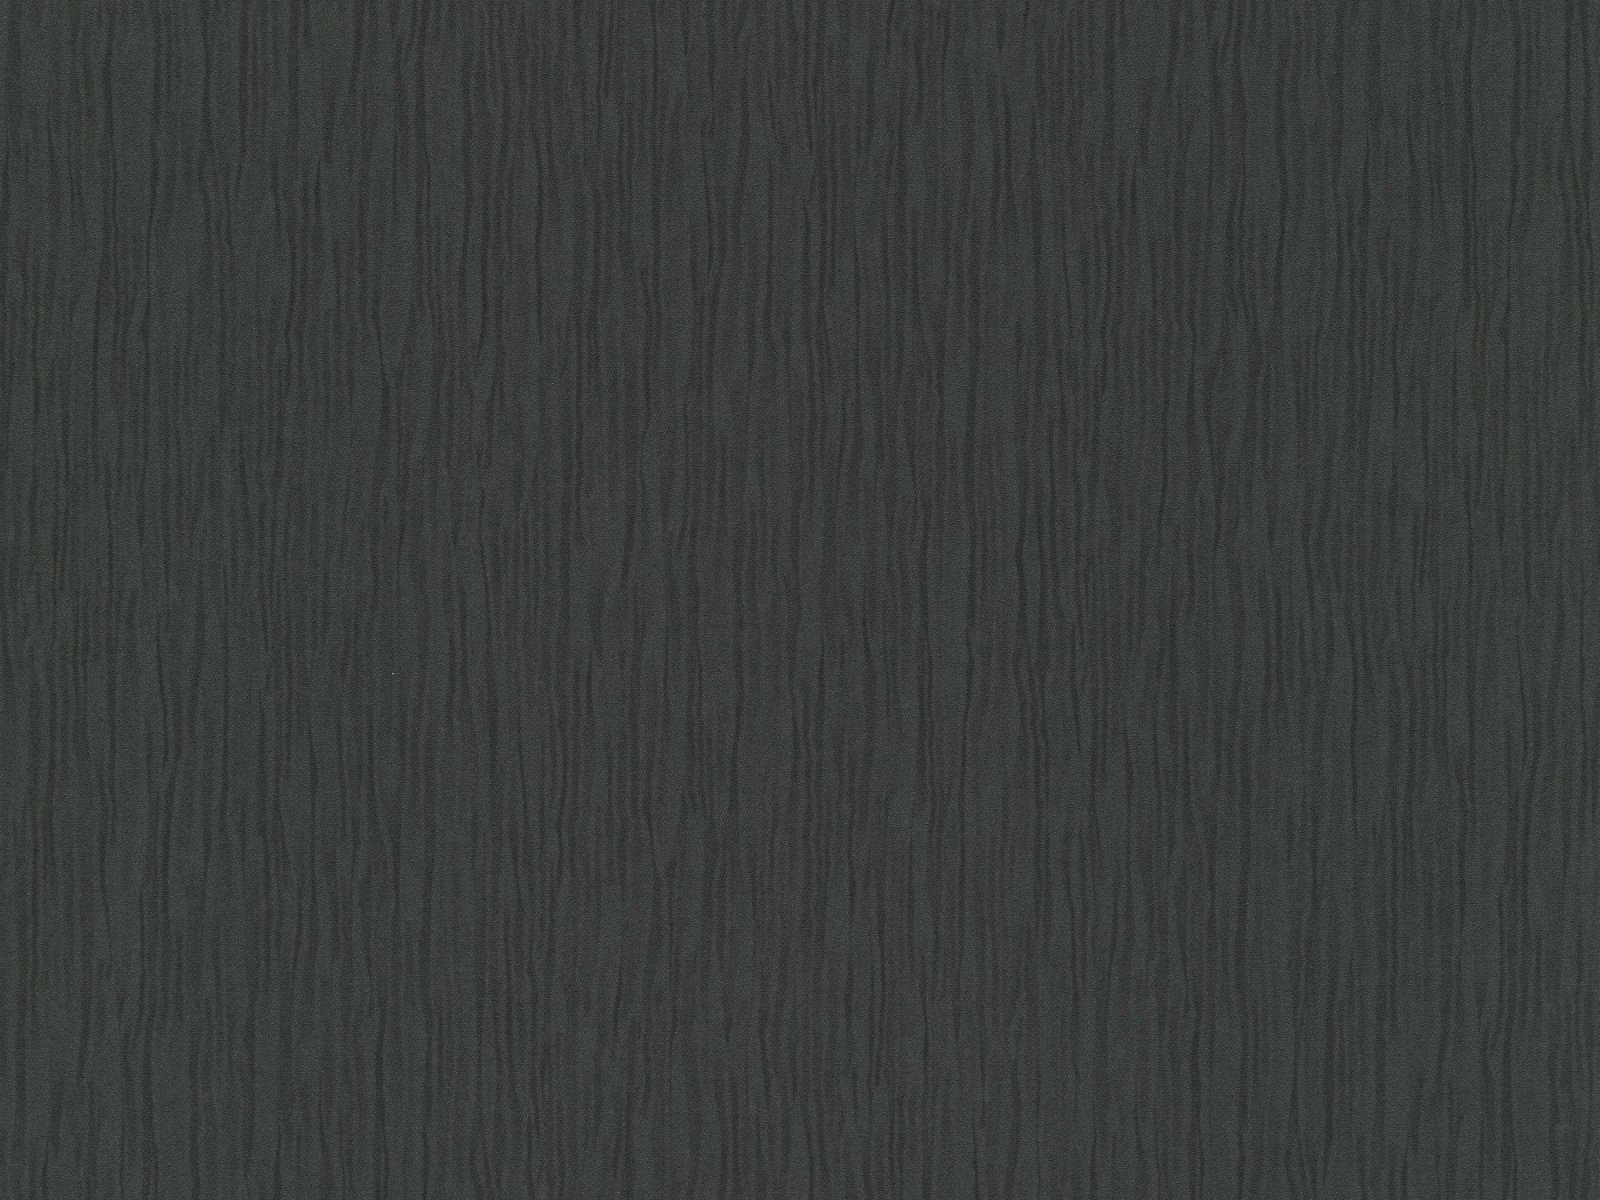 Vliesová tapeta vlnovkovitá s dekoratívnou textúrou s moaré efektom v čiernej farbe, ER-601818